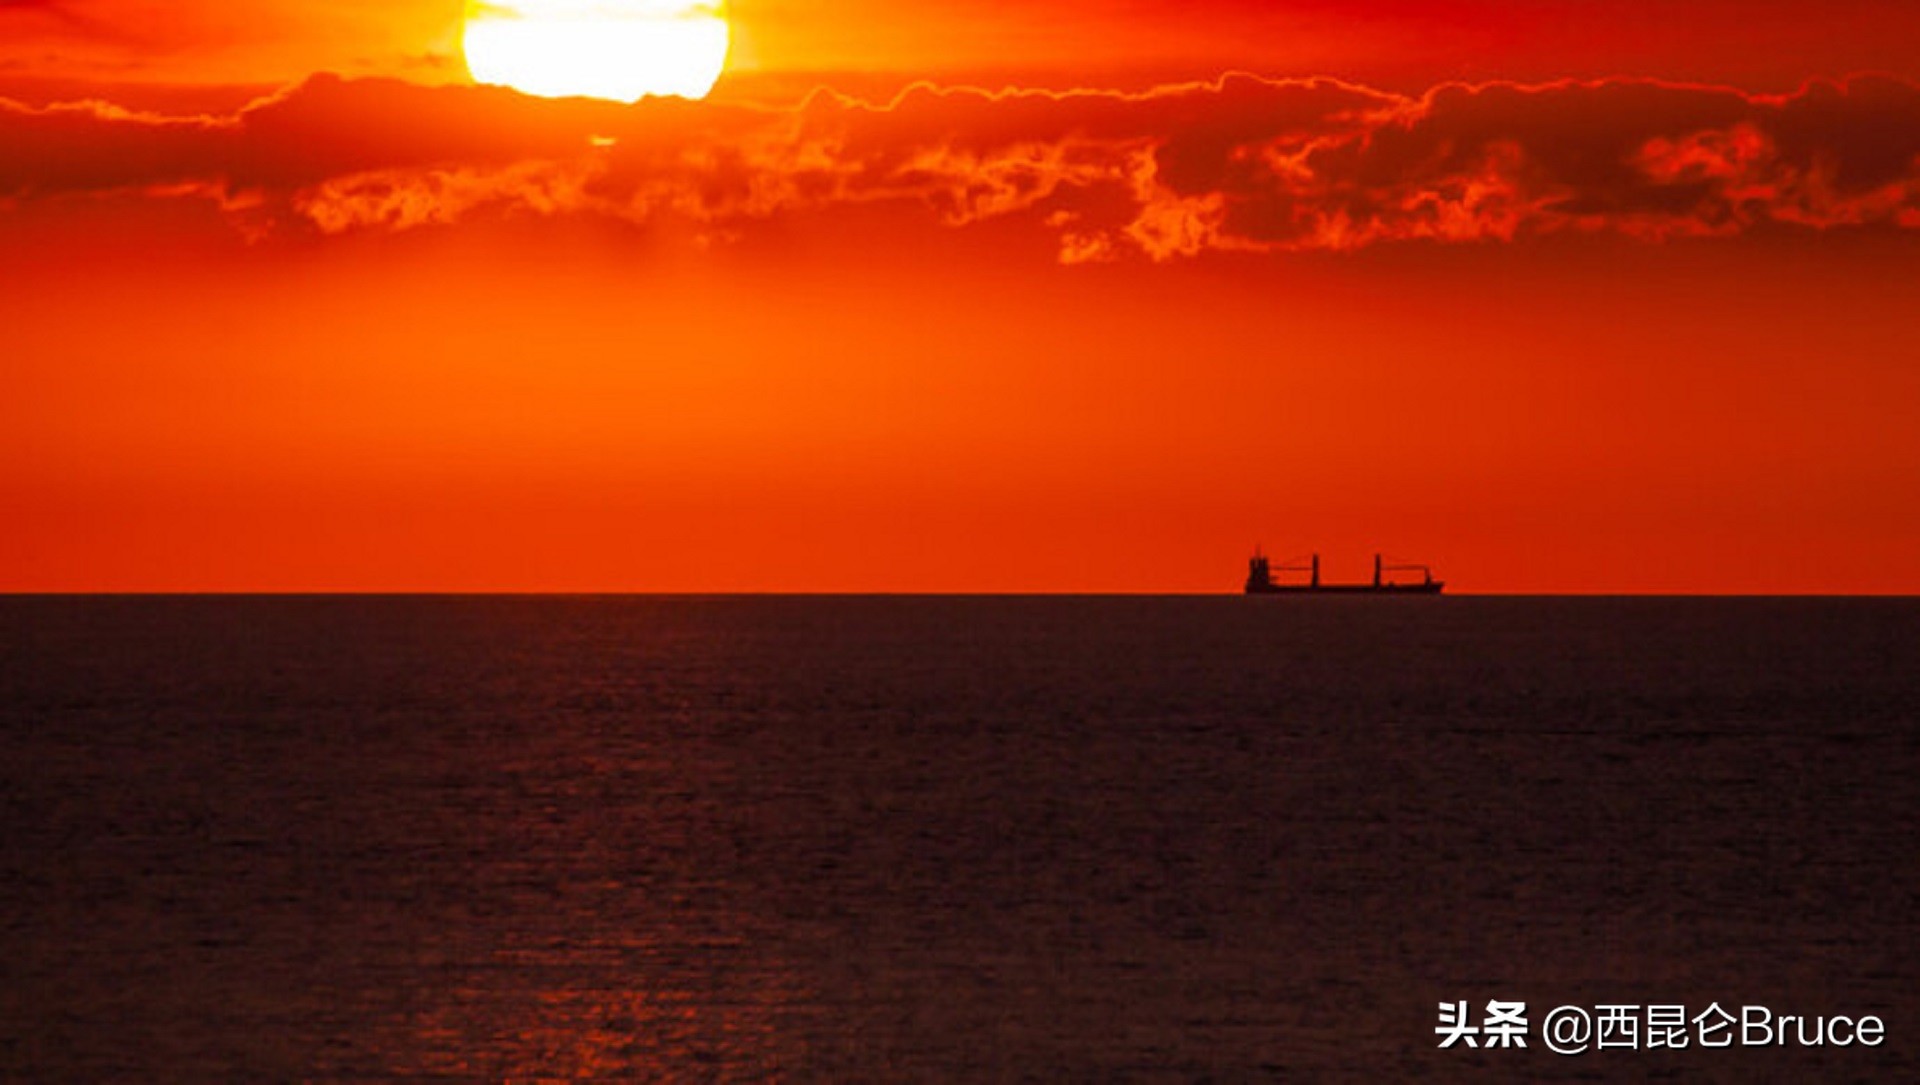 原因找到了！浙江舟山出现血红天空，和海边有关，并非所谓的异象